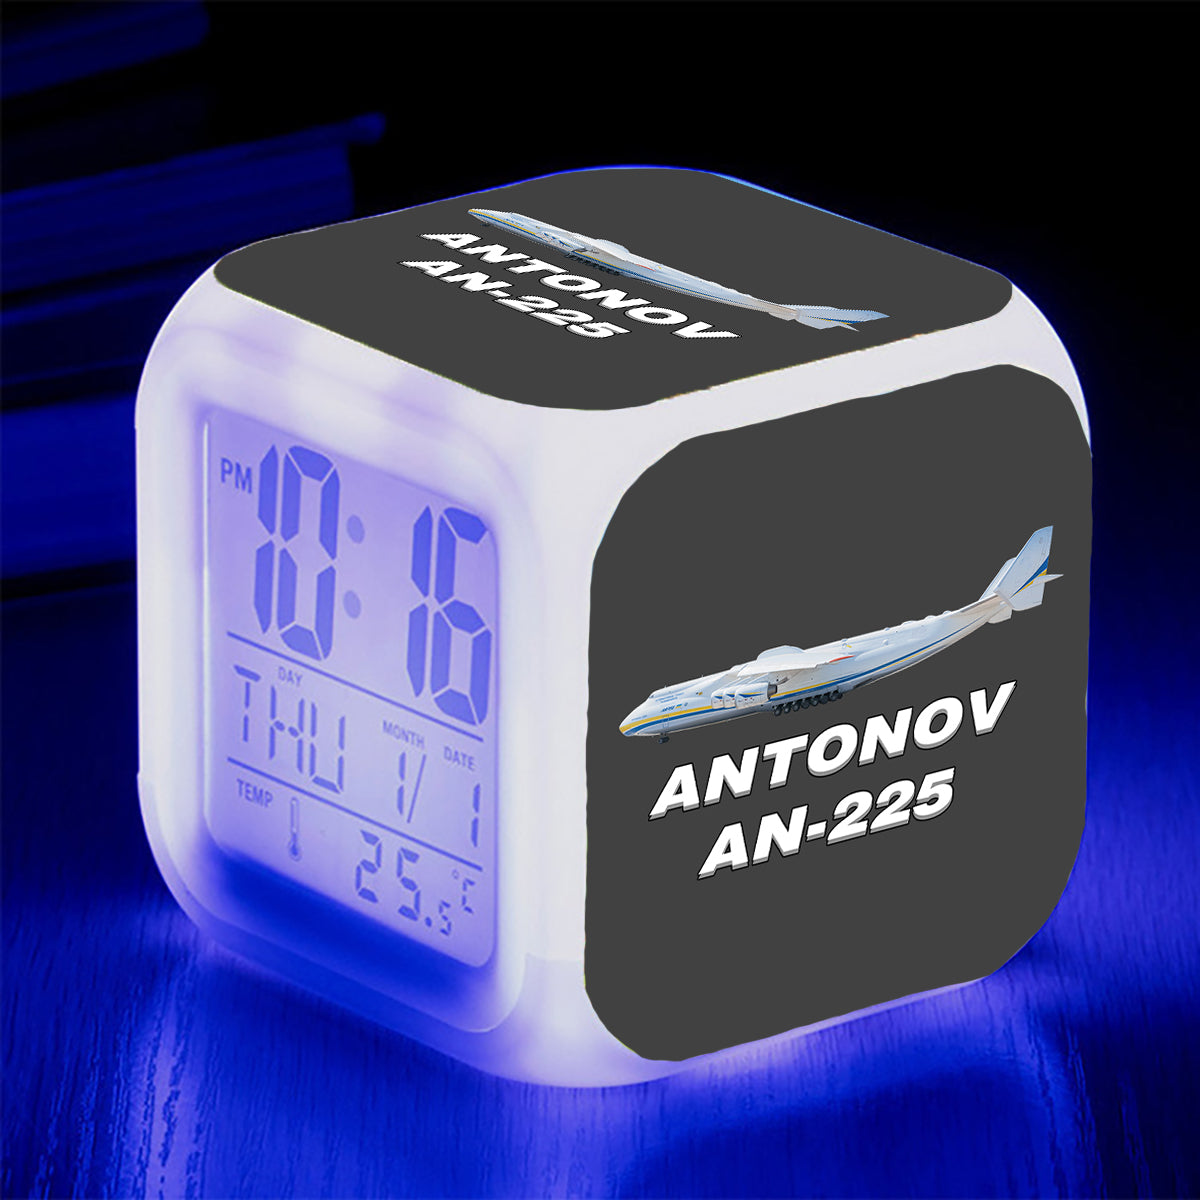 The Antonov AN-225 Designed "7 Colour" Digital Alarm Clock